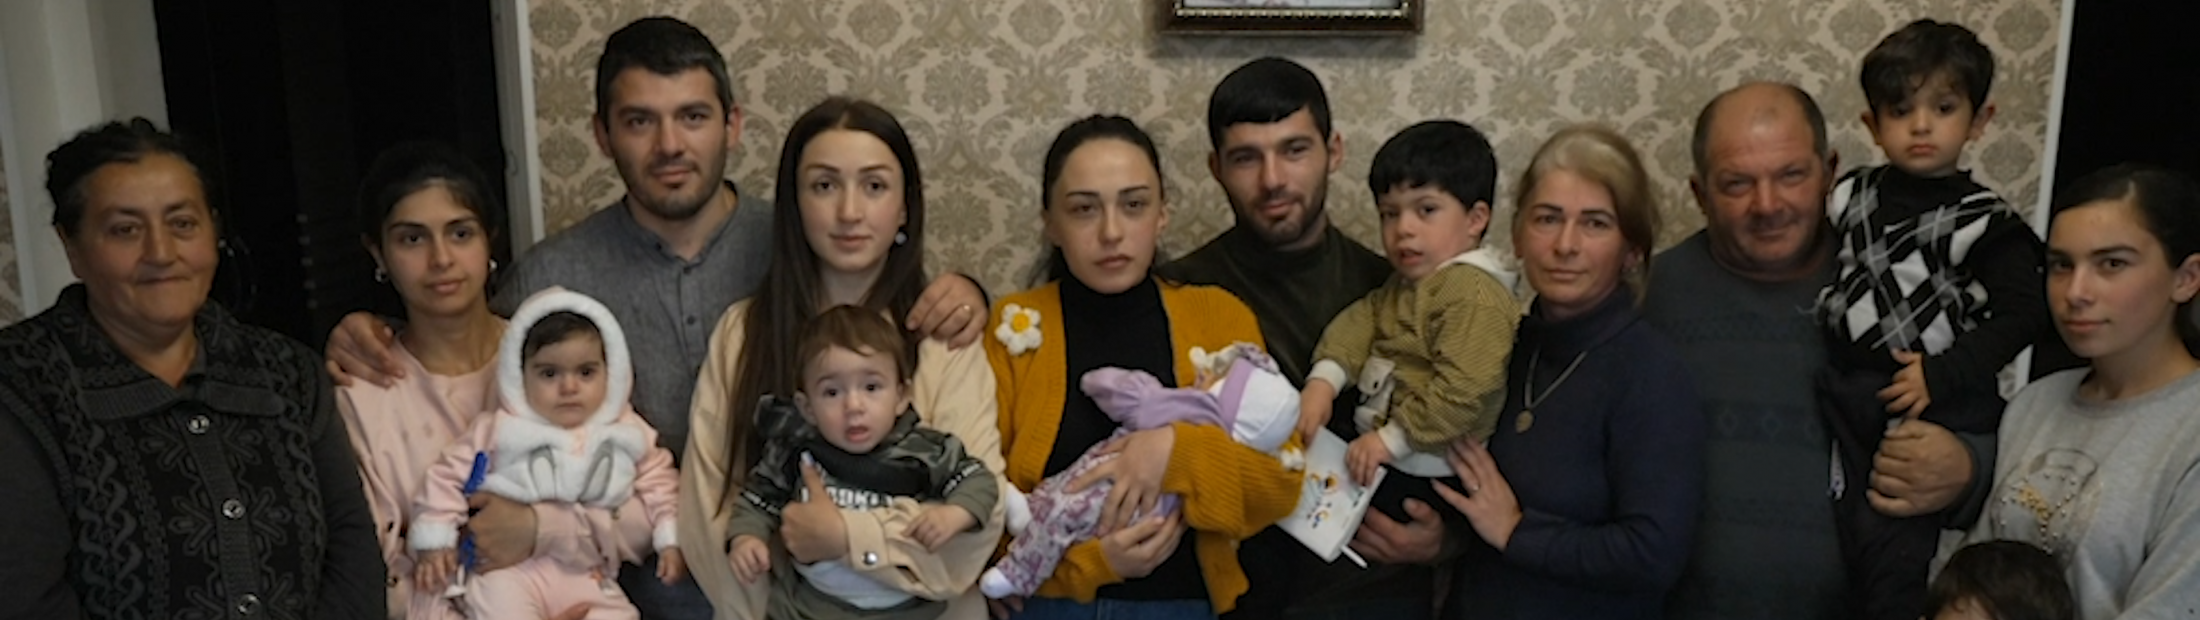 Os refugiados encontram segurança na Arménia, mas o futuro permanece incerto 